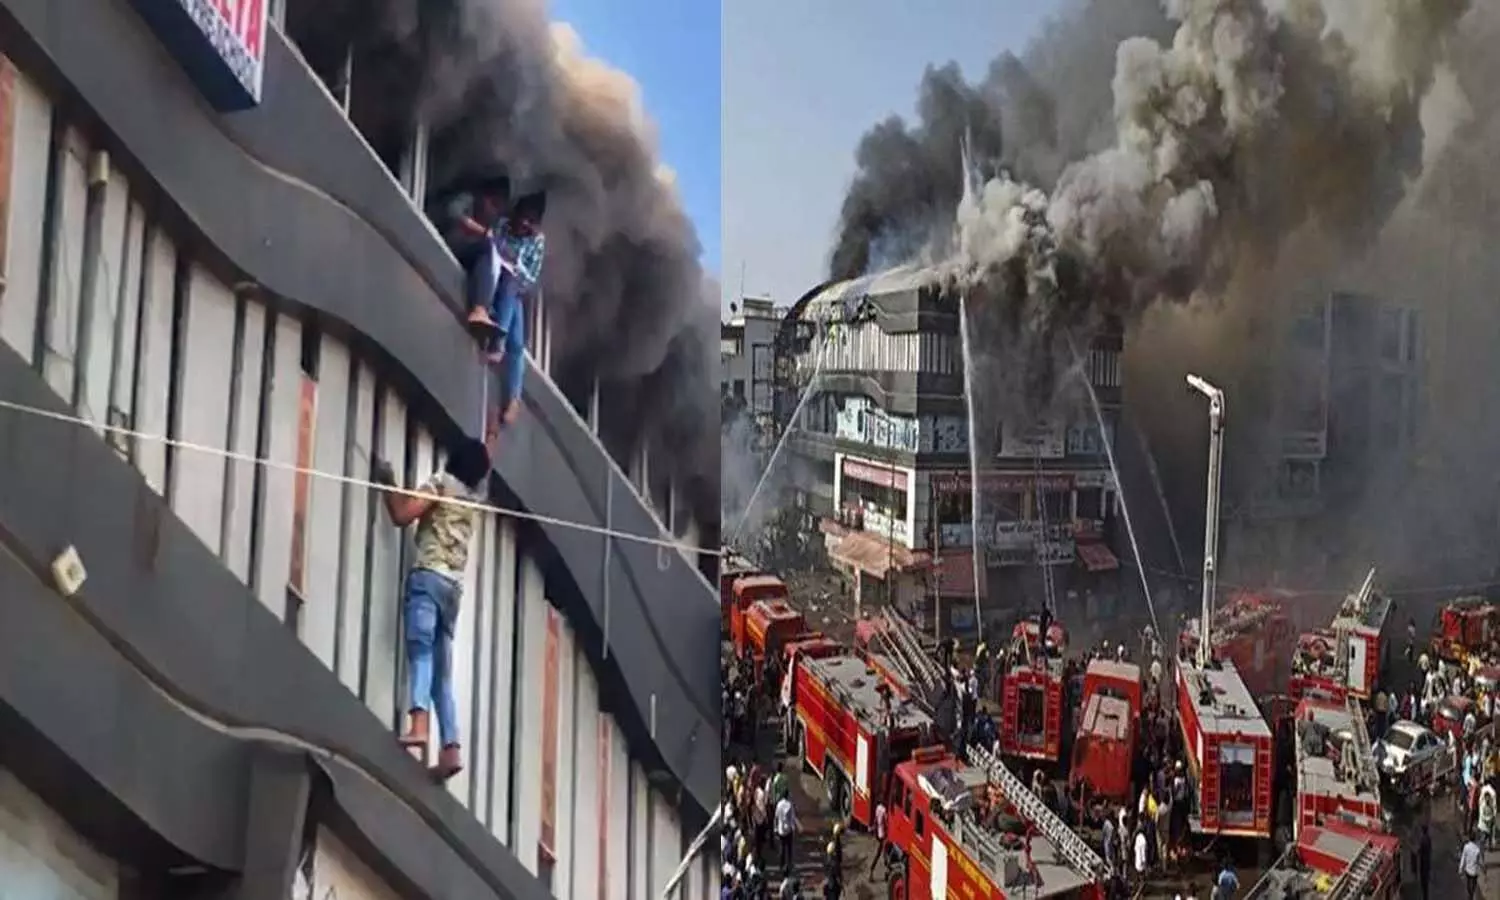 Gujarat News: A massive fire broke out in a complex in Surat, 20 girls were rescued